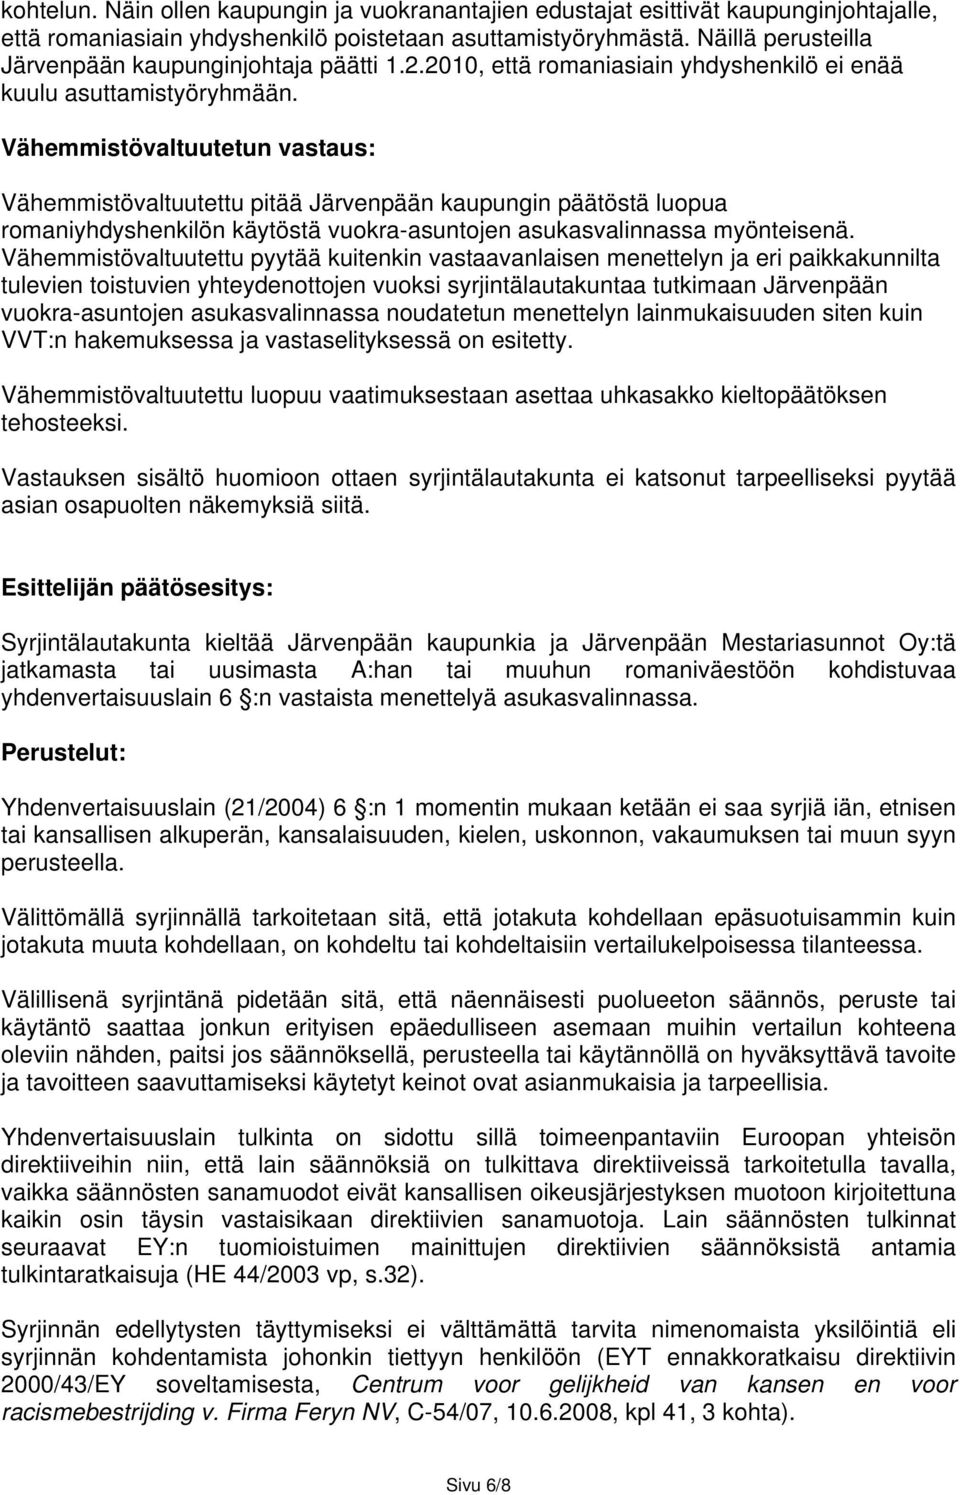 Vähemmistövaltuutetun vastaus: Vähemmistövaltuutettu pitää Järvenpään kaupungin päätöstä luopua romaniyhdyshenkilön käytöstä vuokra-asuntojen asukasvalinnassa myönteisenä.